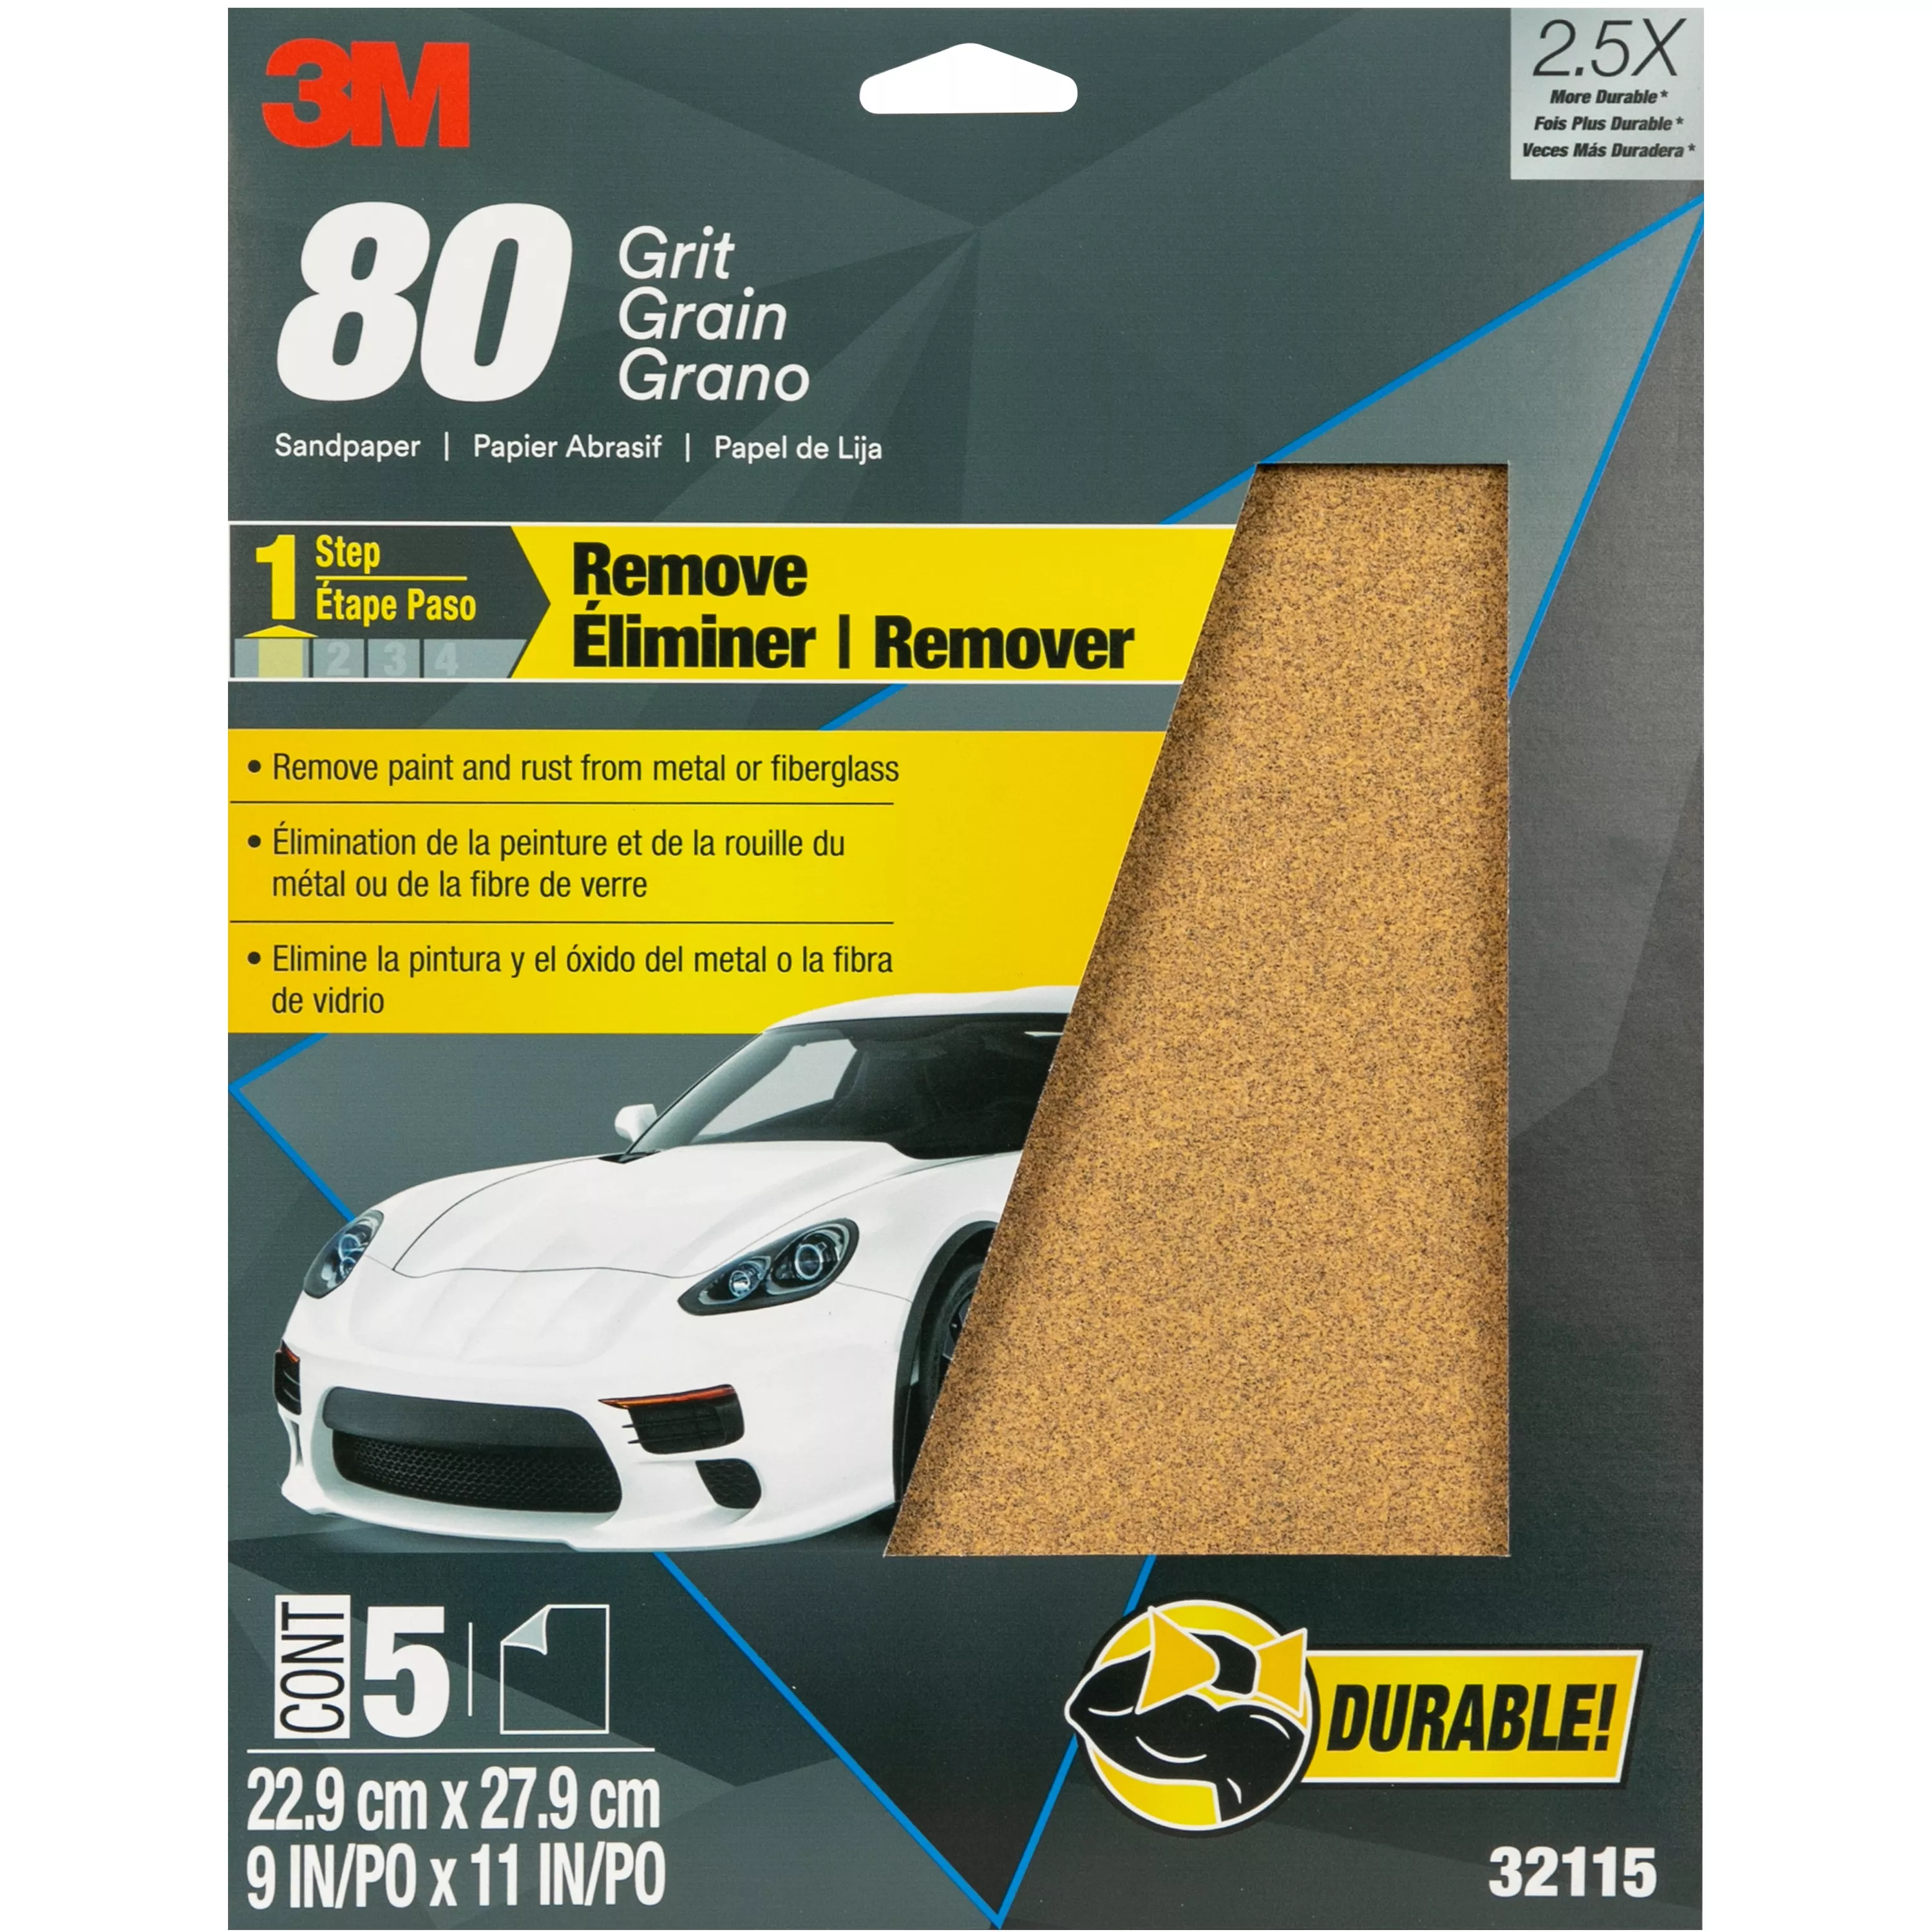 3M™ Sandpaper, 32115, 80 Grit, 9 in x 11 in, 5 per pack, 20 packs per
case